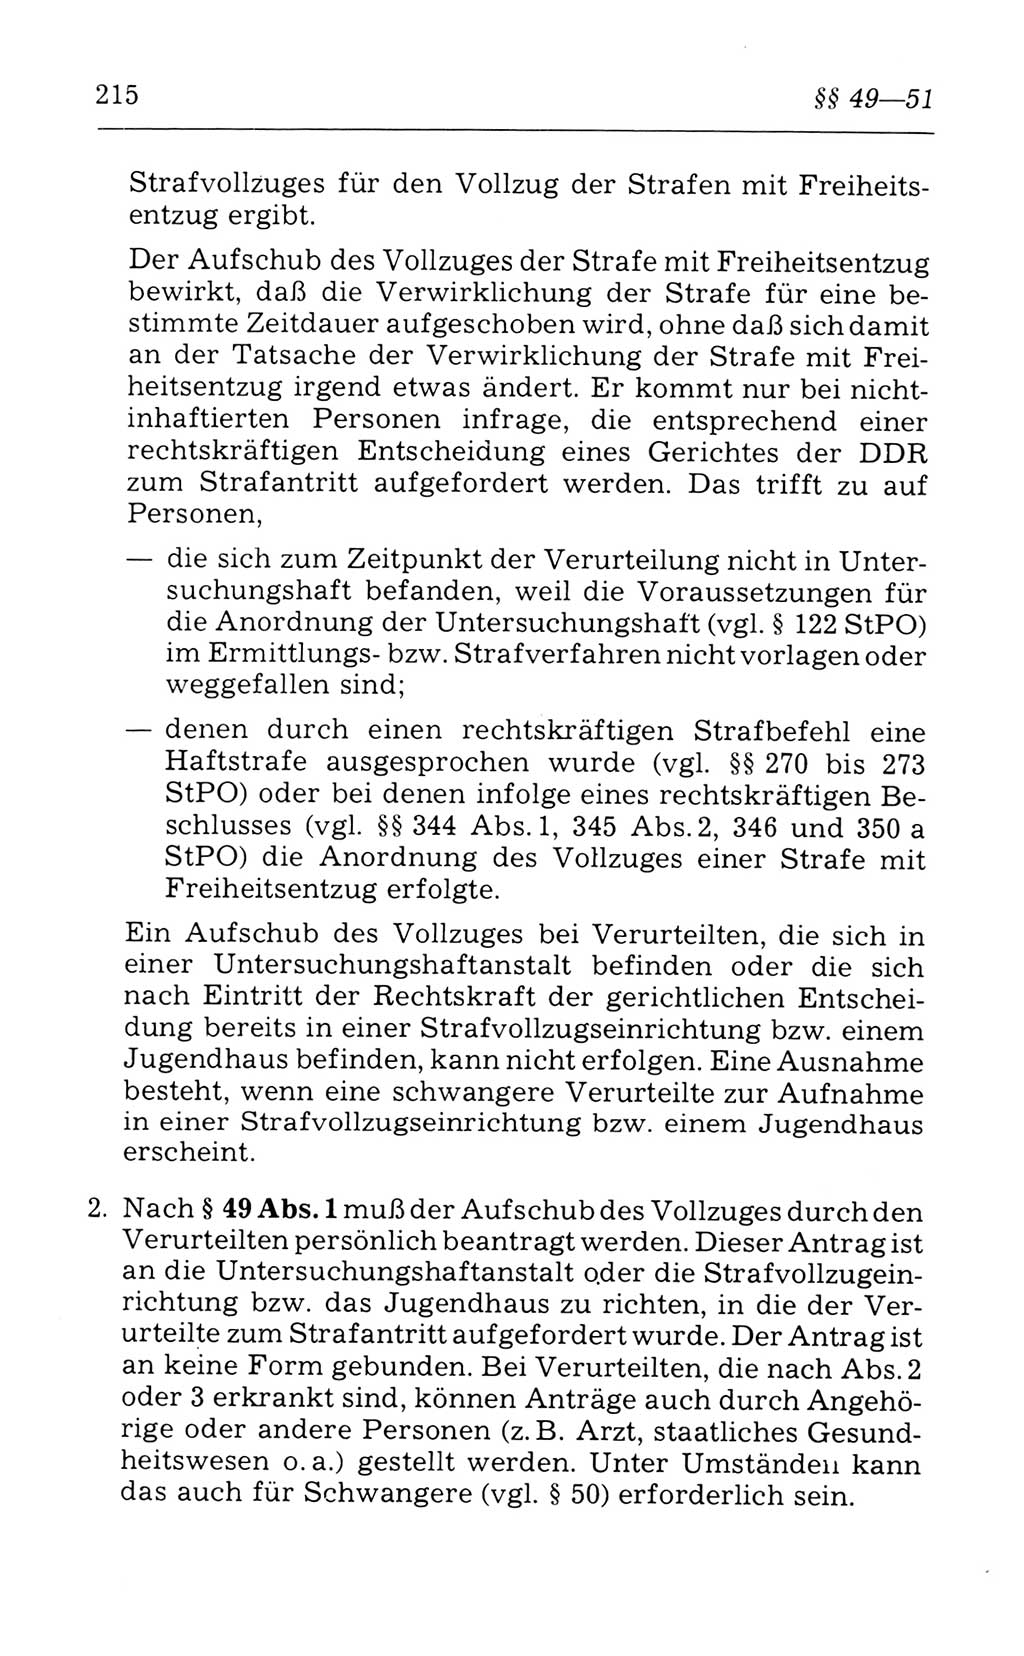 Kommentar zum Strafvollzugsgesetz [(StVG) Deutsche Demokratische Republik (DDR)] 1980, Seite 215 (Komm. StVG DDR 1980, S. 215)